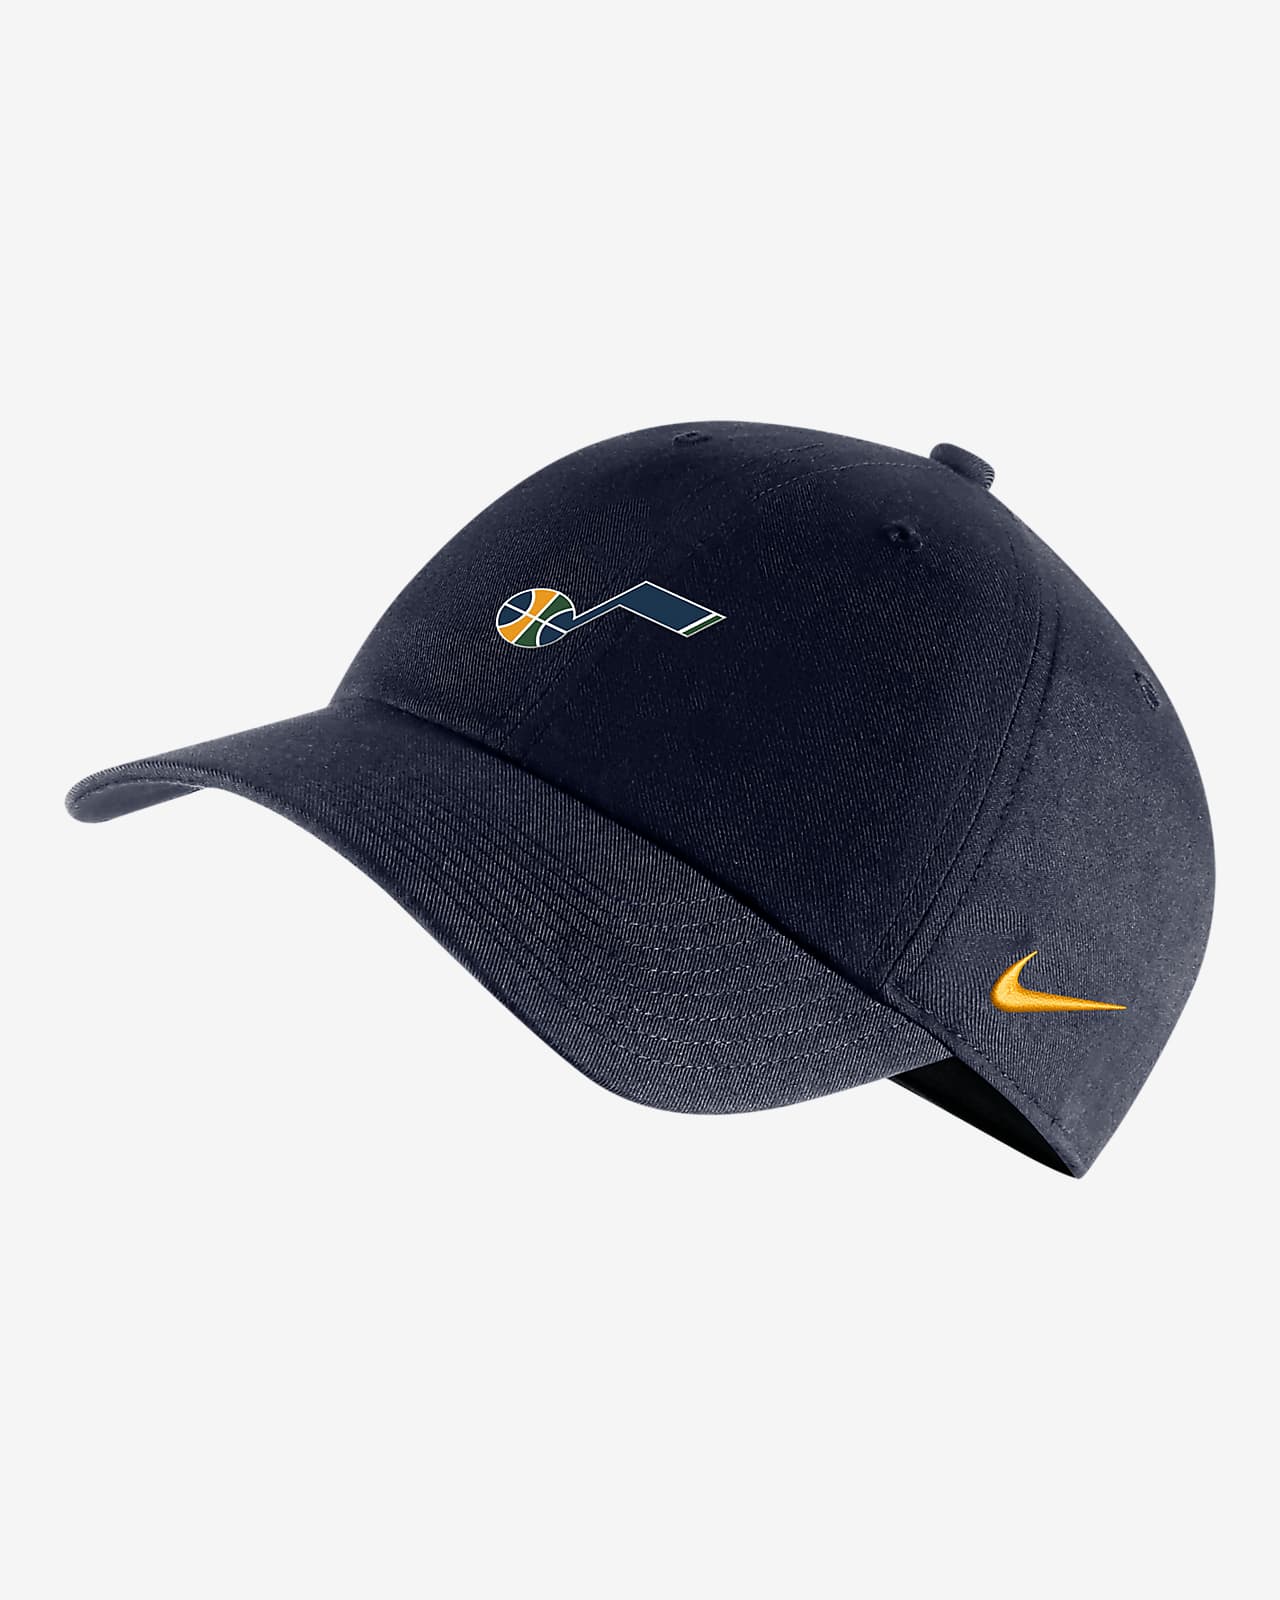 Utah Jazz Heritage86 Nike Dri-FIT NBA Adjustable Hat